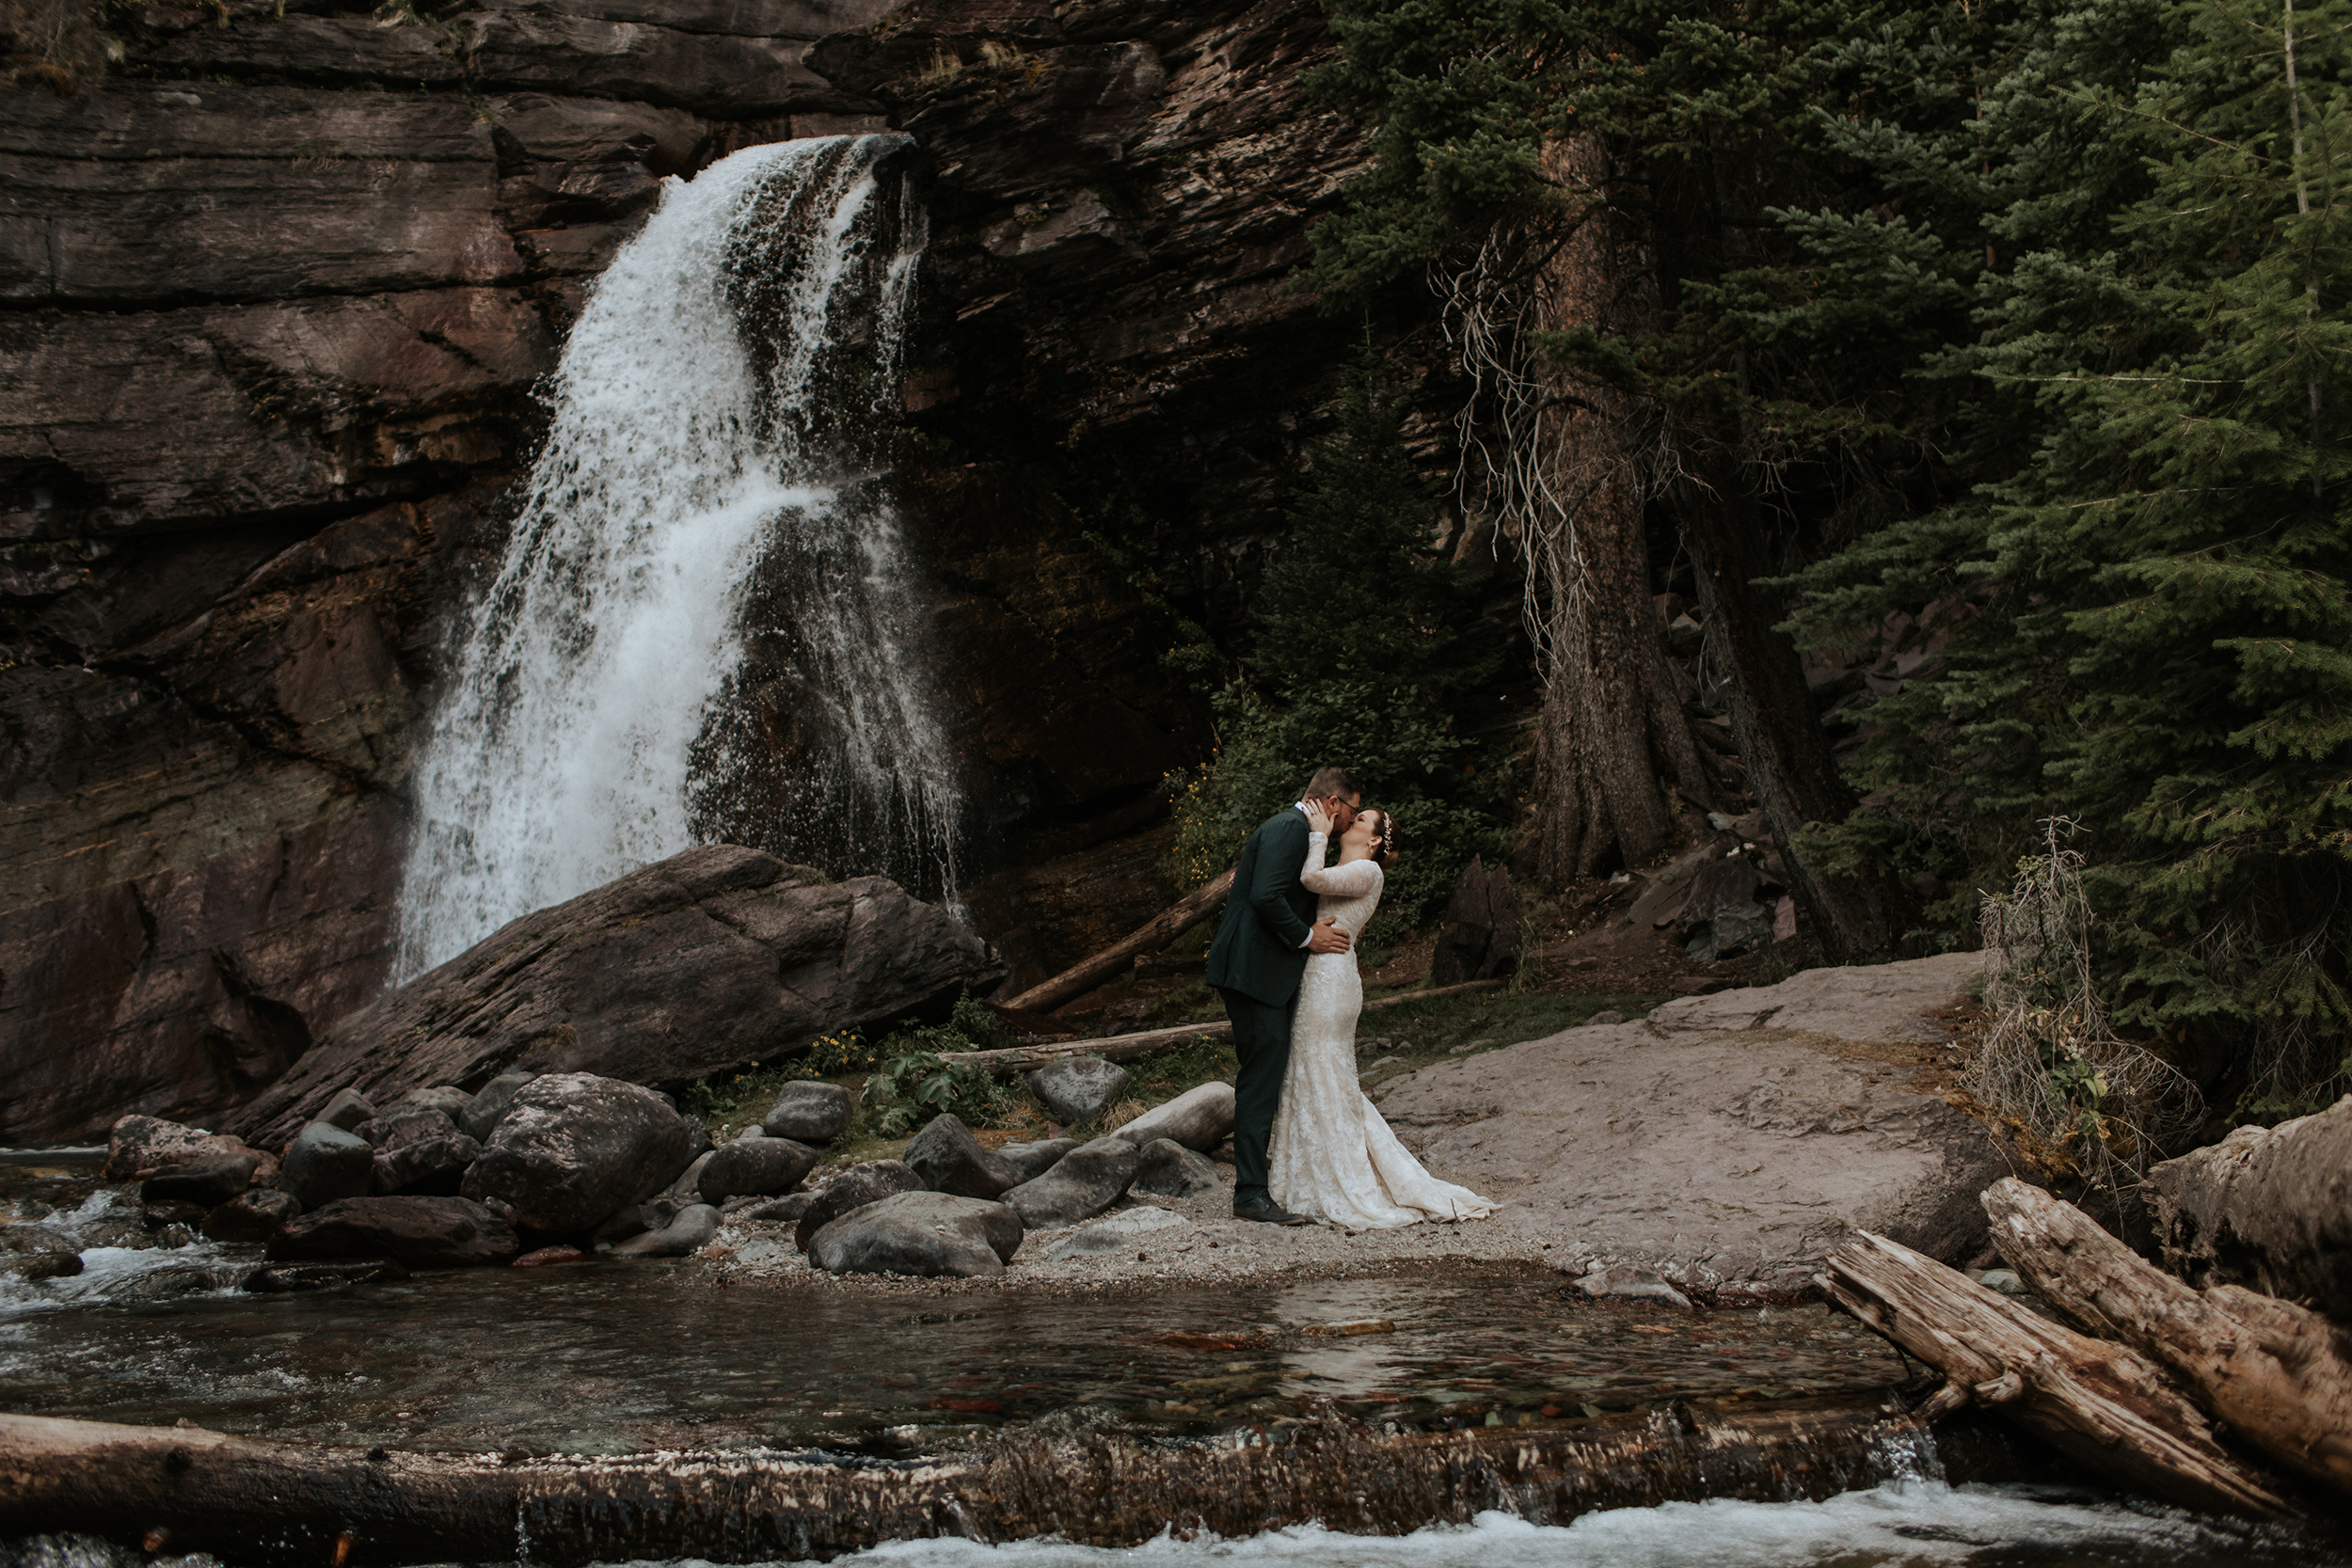 Glacier National Park Micro Wedding at a Waterfall